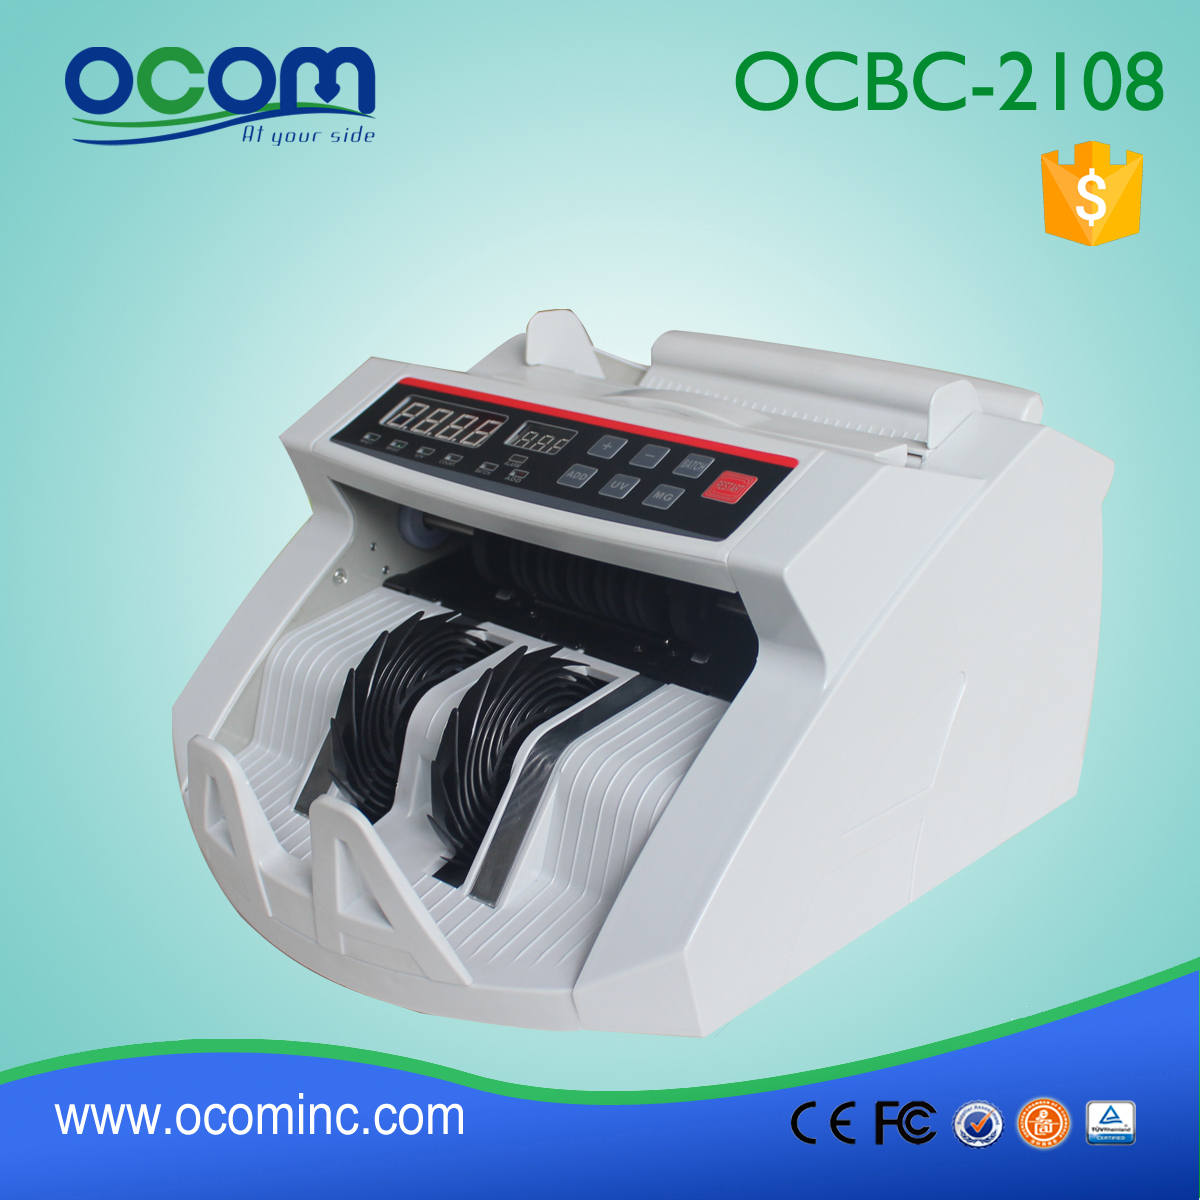 OCBC-2108: Bill Moeda Banknote Contador com Detector Falso